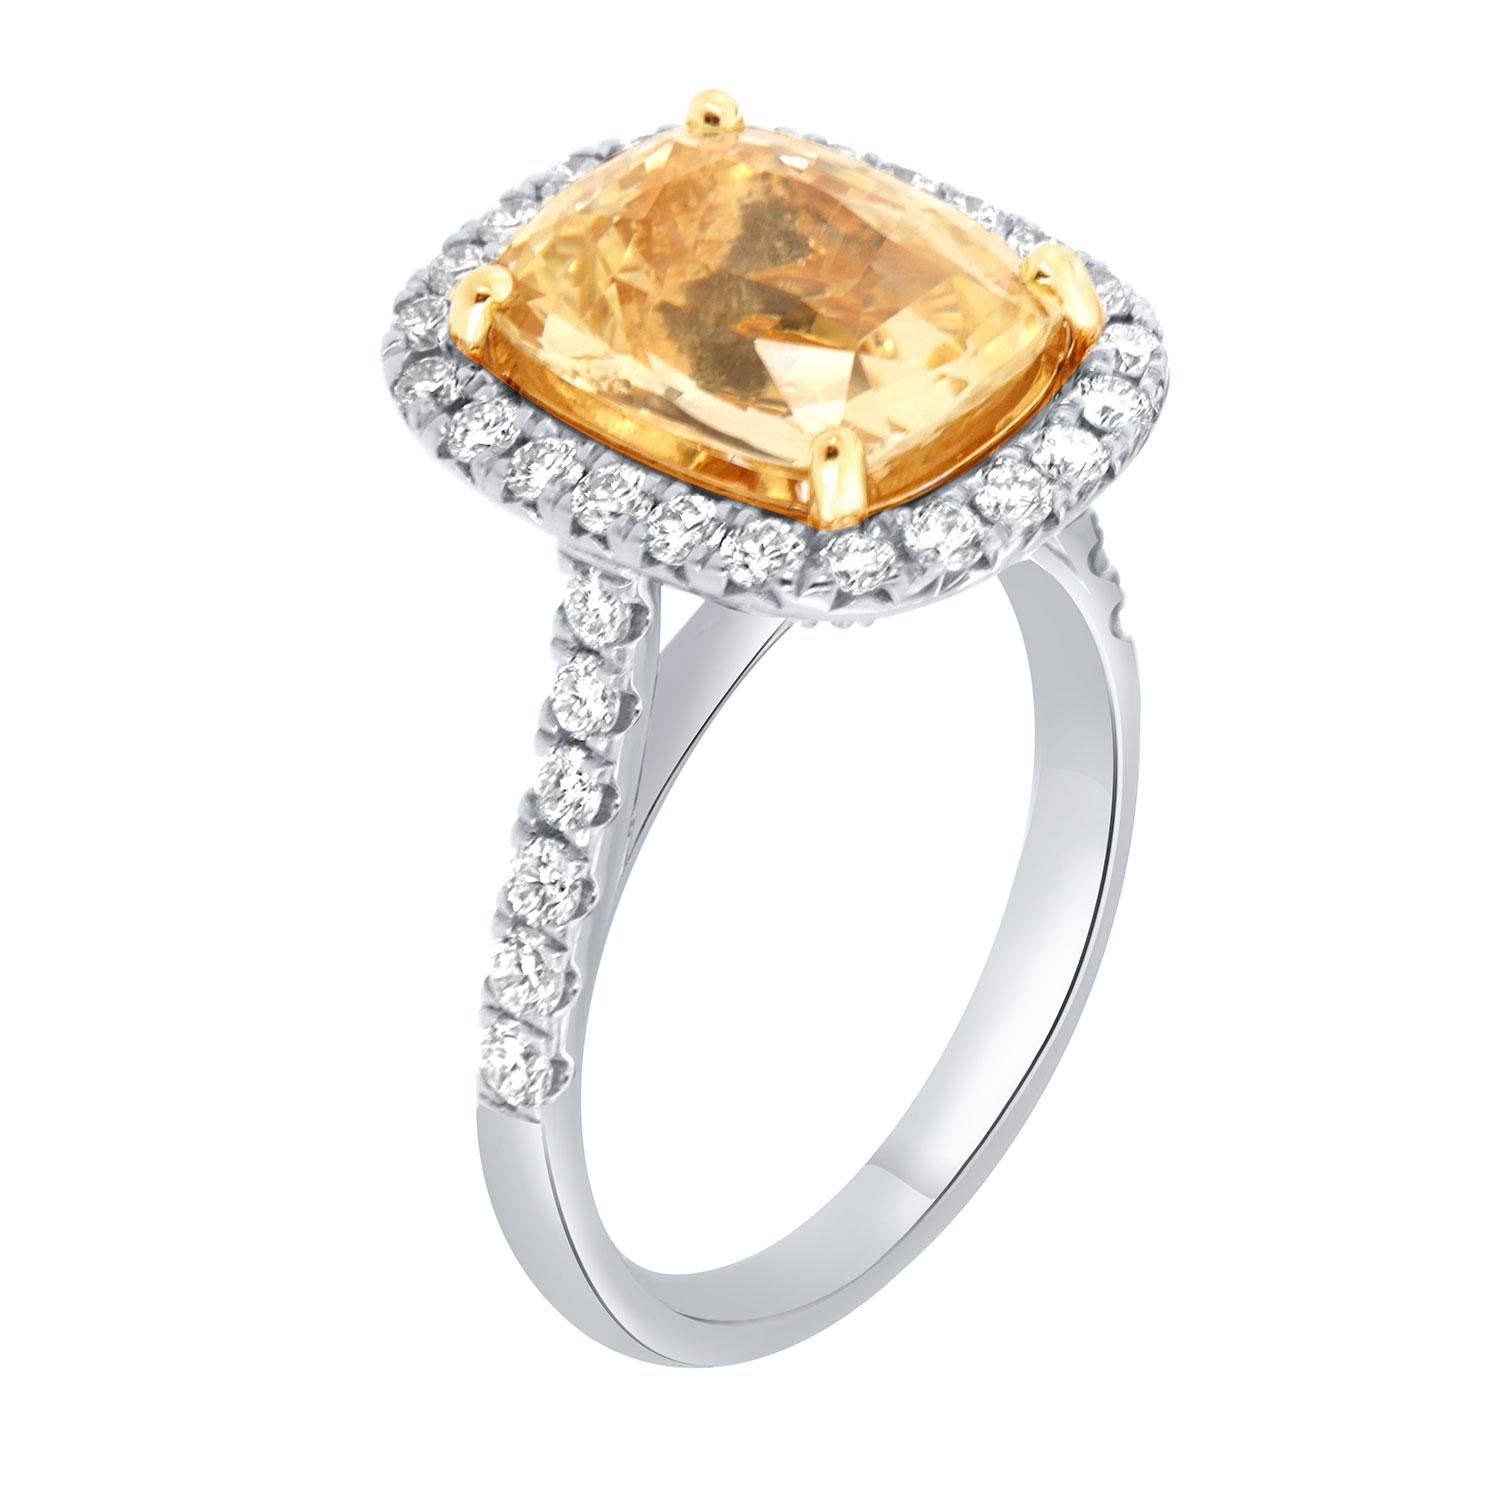 Dieser Ring aus 18 Karat Weiß- und Gelbgold ist mit einem GIA-zertifizierten 6,55 Karat länglichen antiken, unerhitzten gelben Saphir im Kissenschliff aus Sri Lanka besetzt. Er hat eine leuchtend gelbe Farbe, die einem ausgefallenen gelben Diamanten